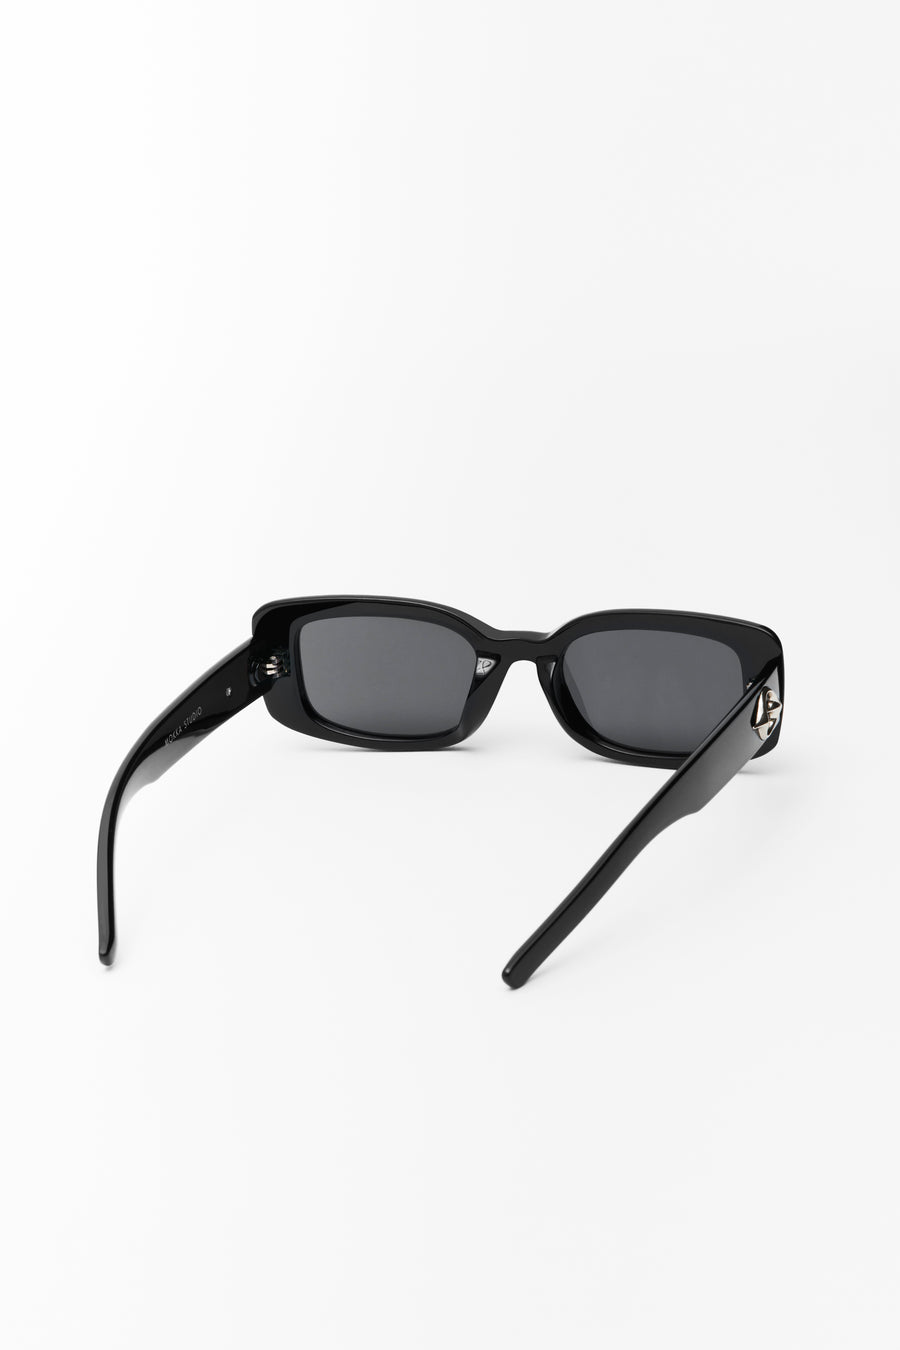 Bobby Sunglasses Black/Smoke Lens